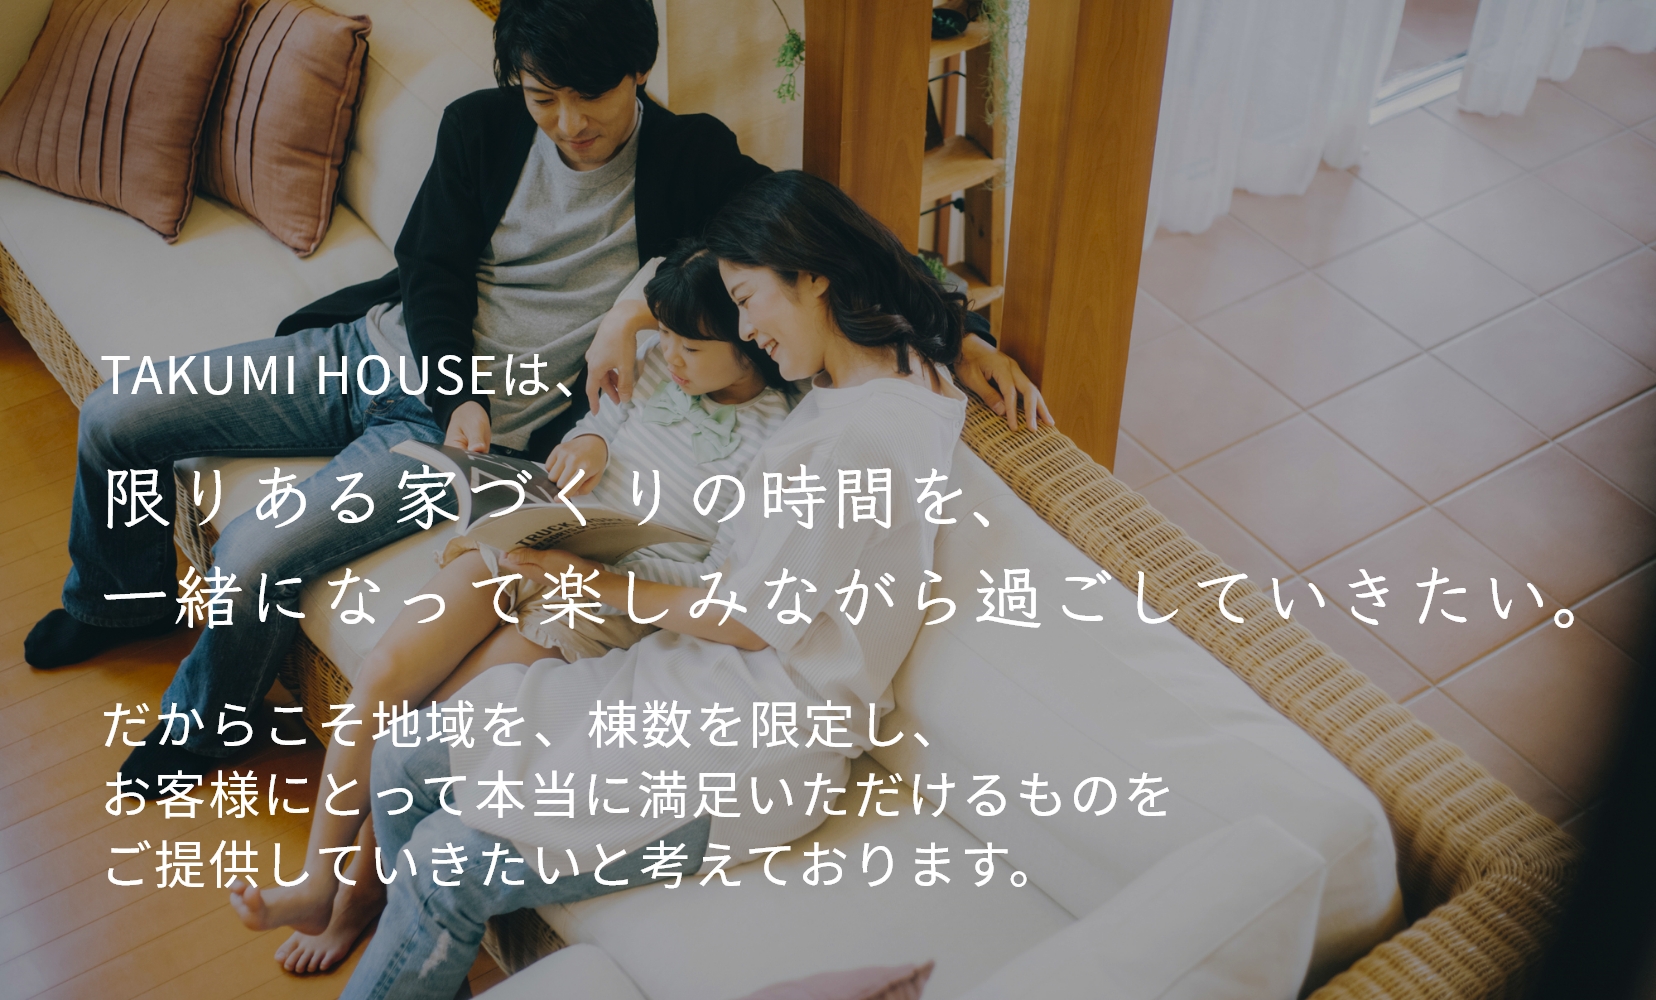 TAKUMI HOUSEは、限りある家づくりの時間を、一緒になって楽しみながら過ごしていきたい。